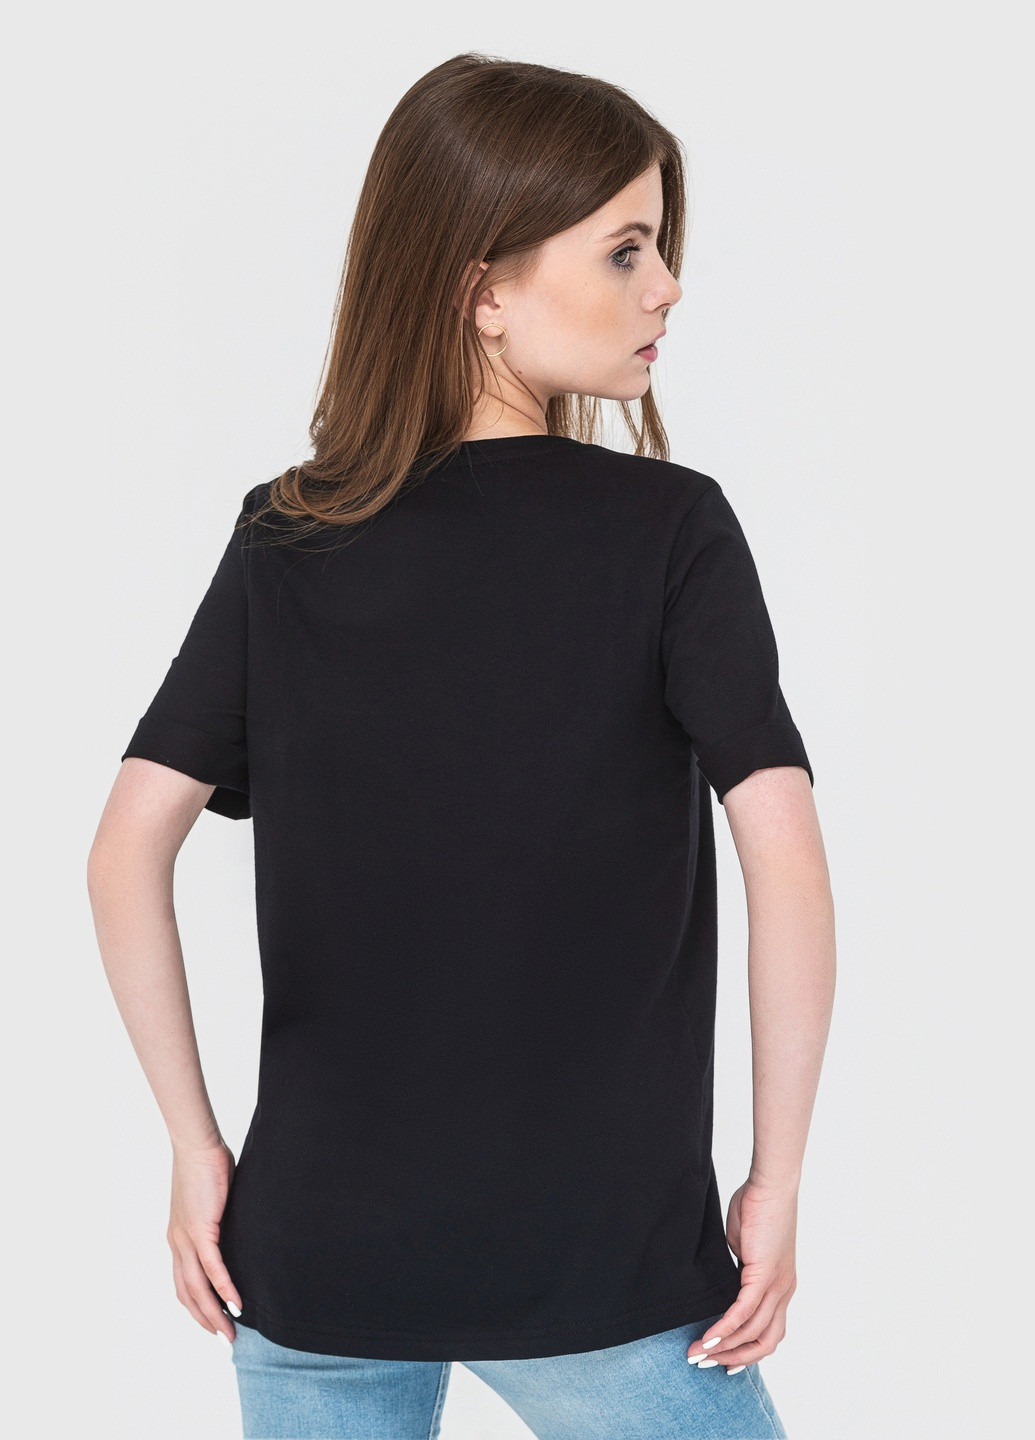 Черная летняя футболка женская с коротким рукавом Роза